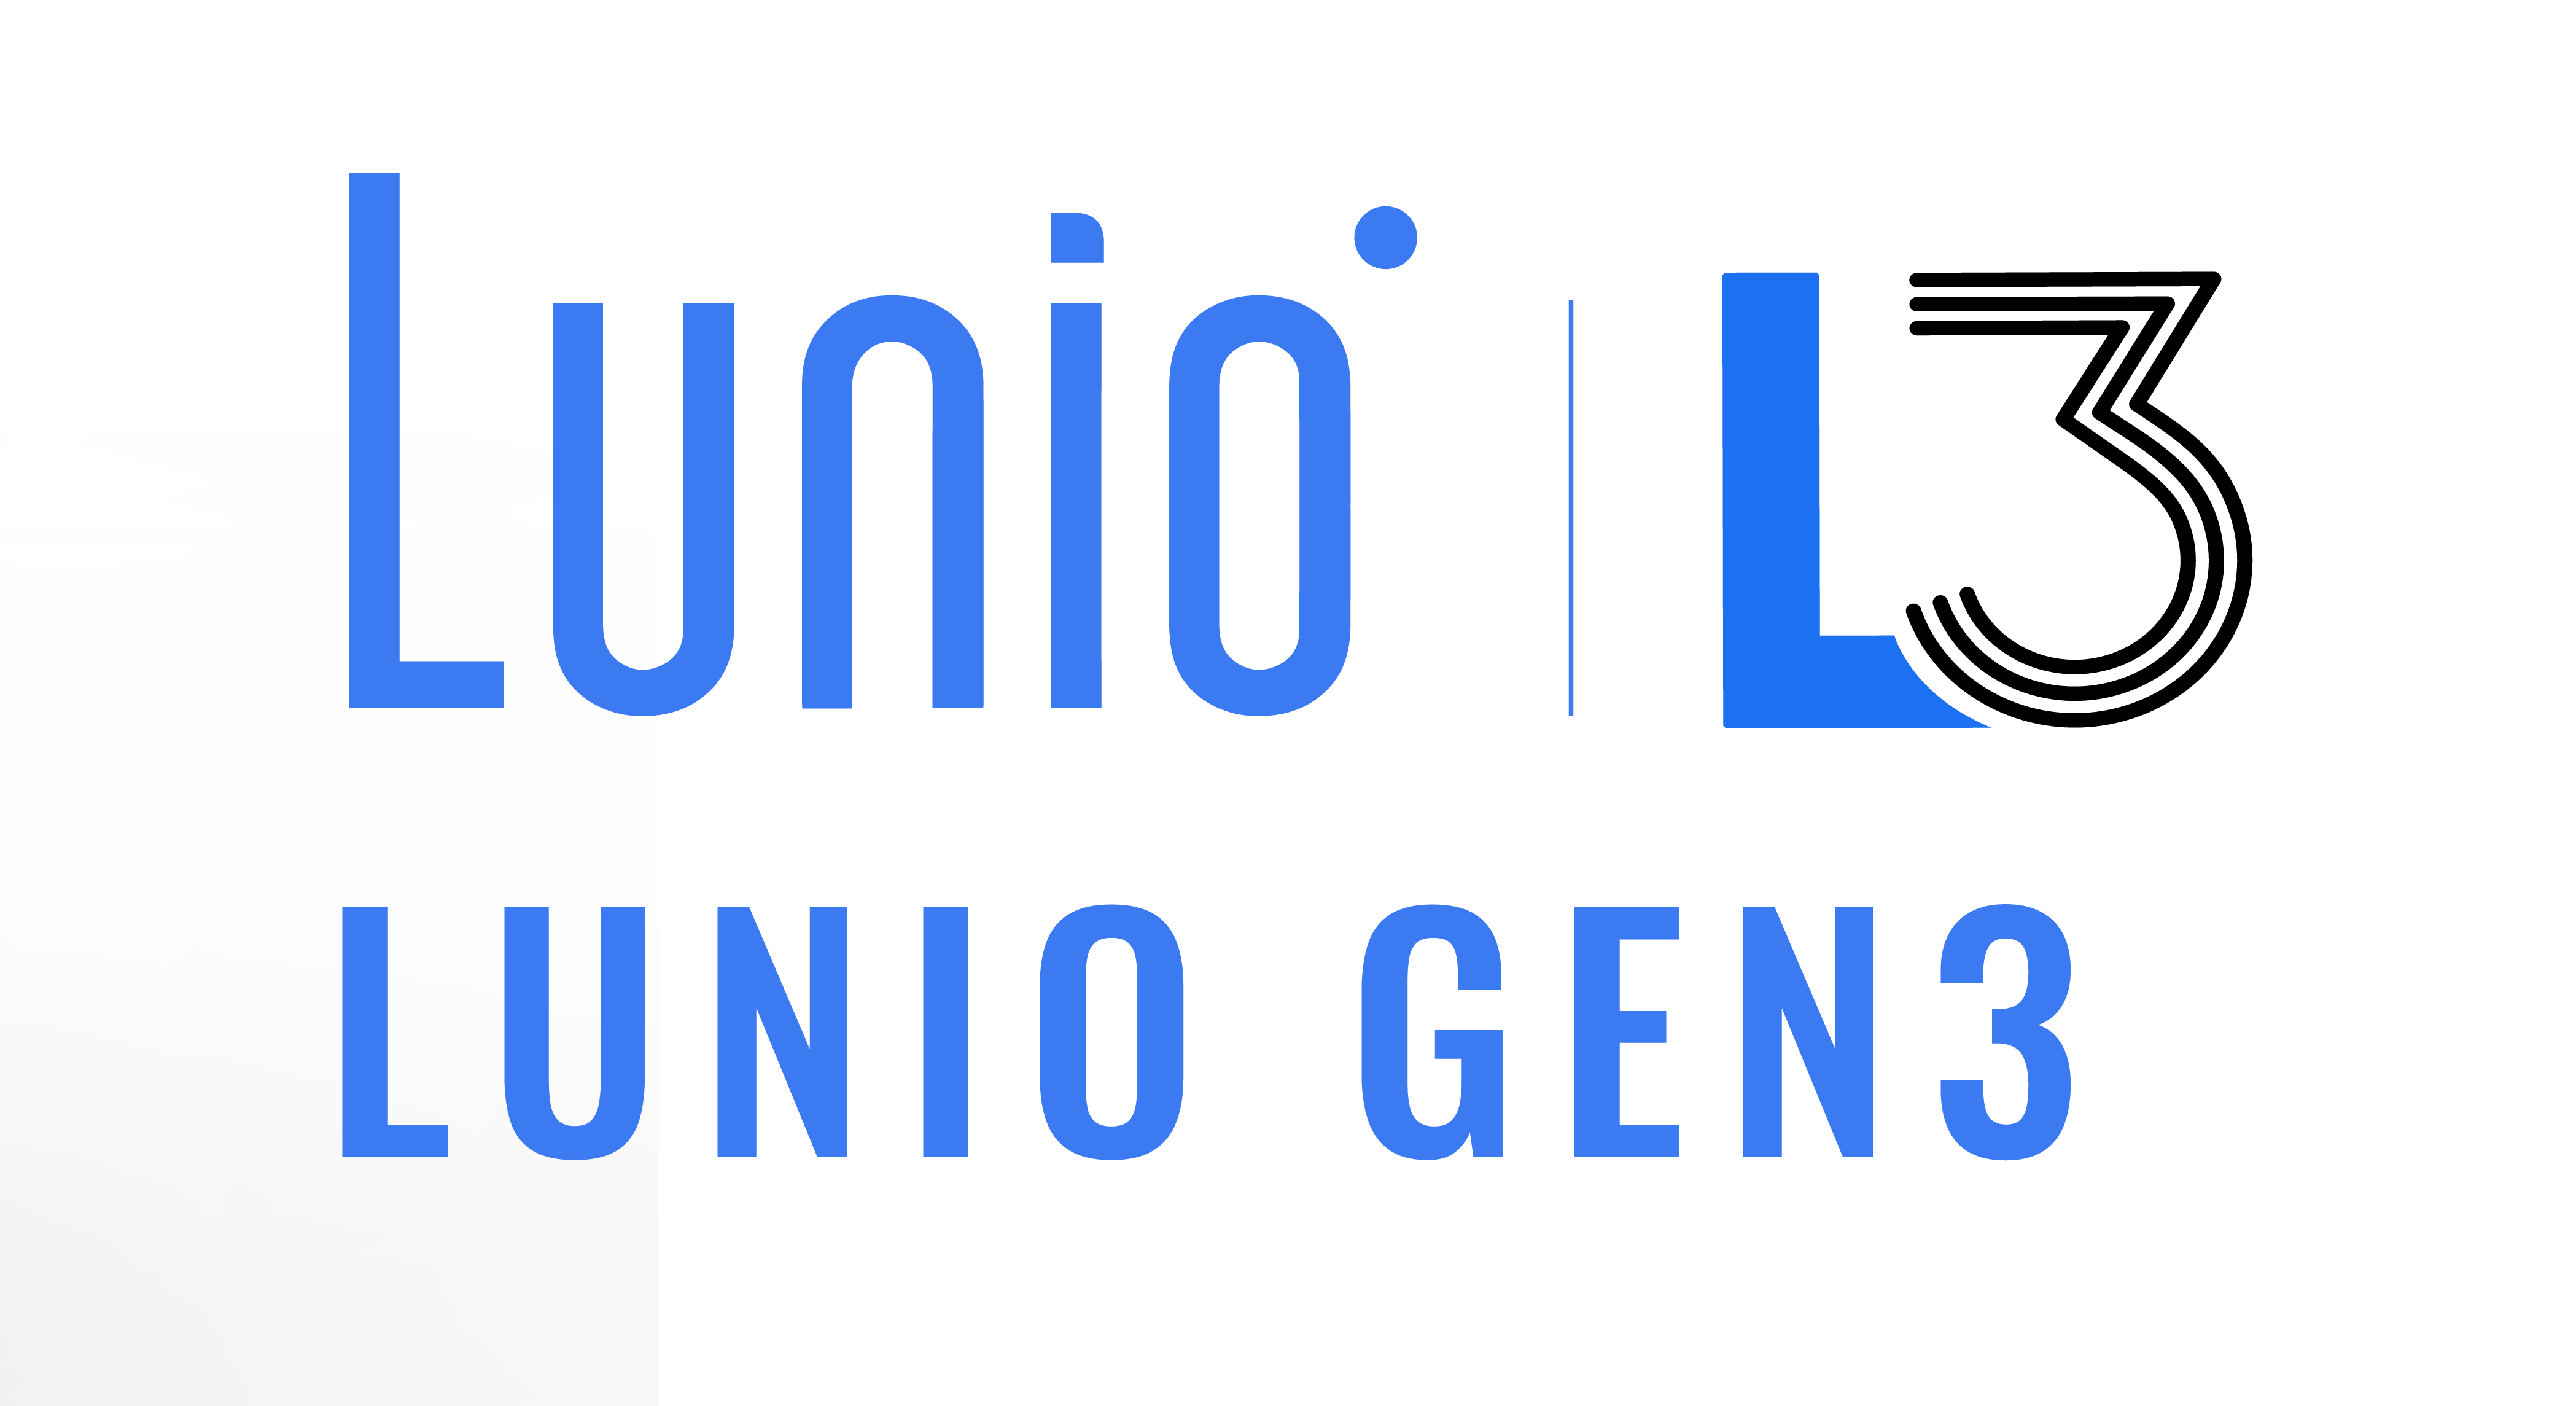 Lunio Gen 3 Logo